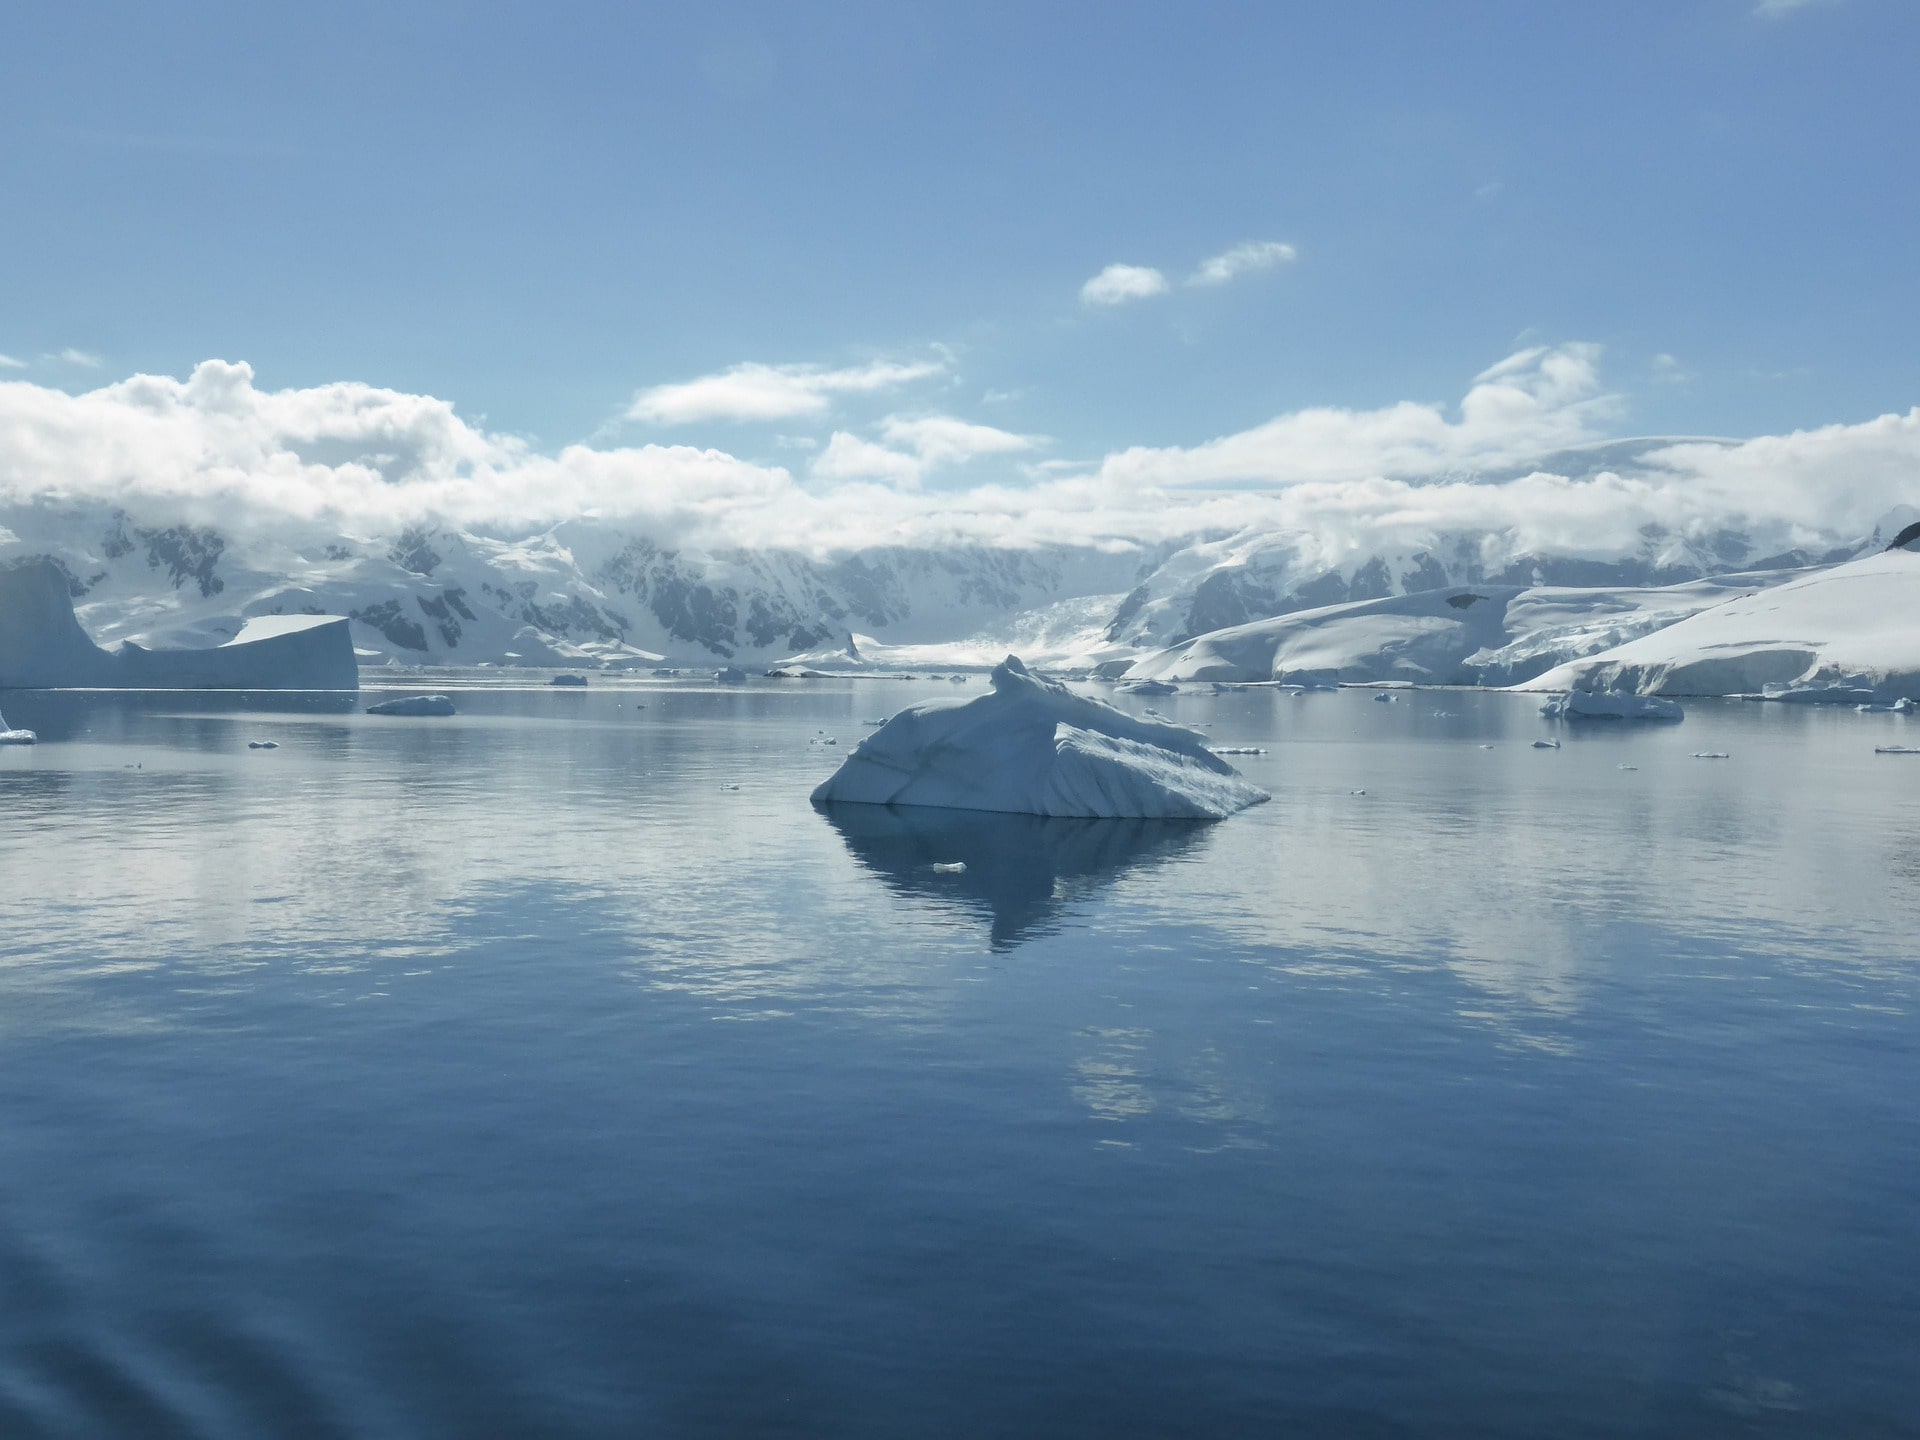 Antarctica iceburgs